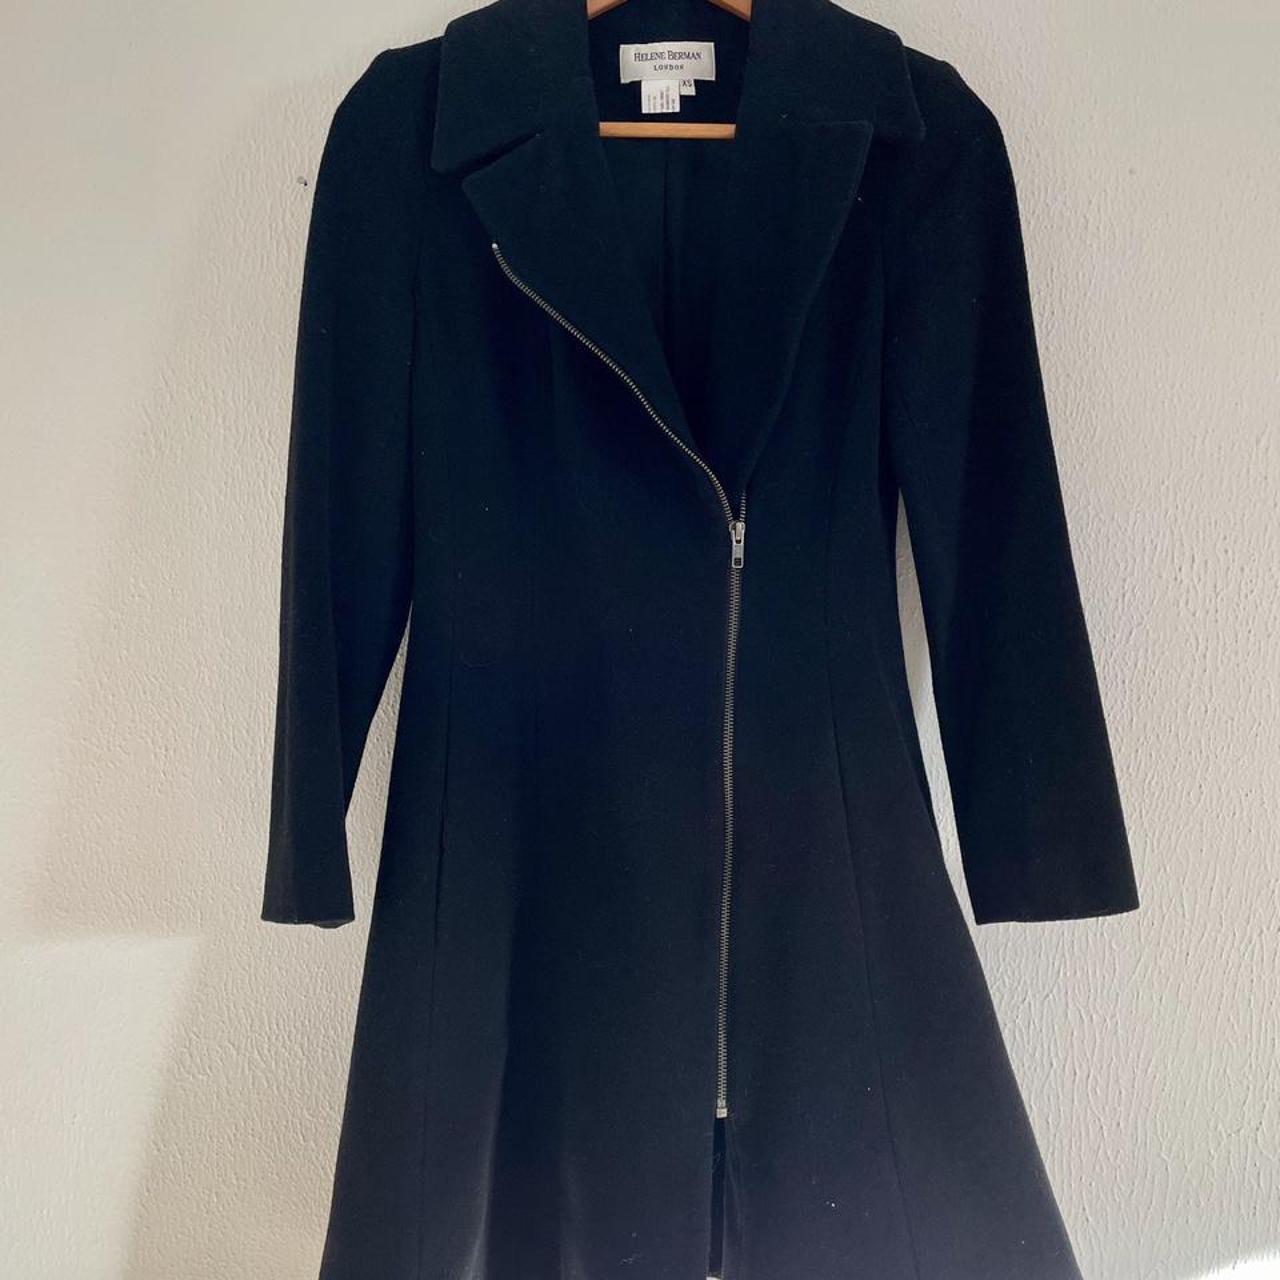 Product Image 3 - Helene Berman cashmere wool coat.
Size: